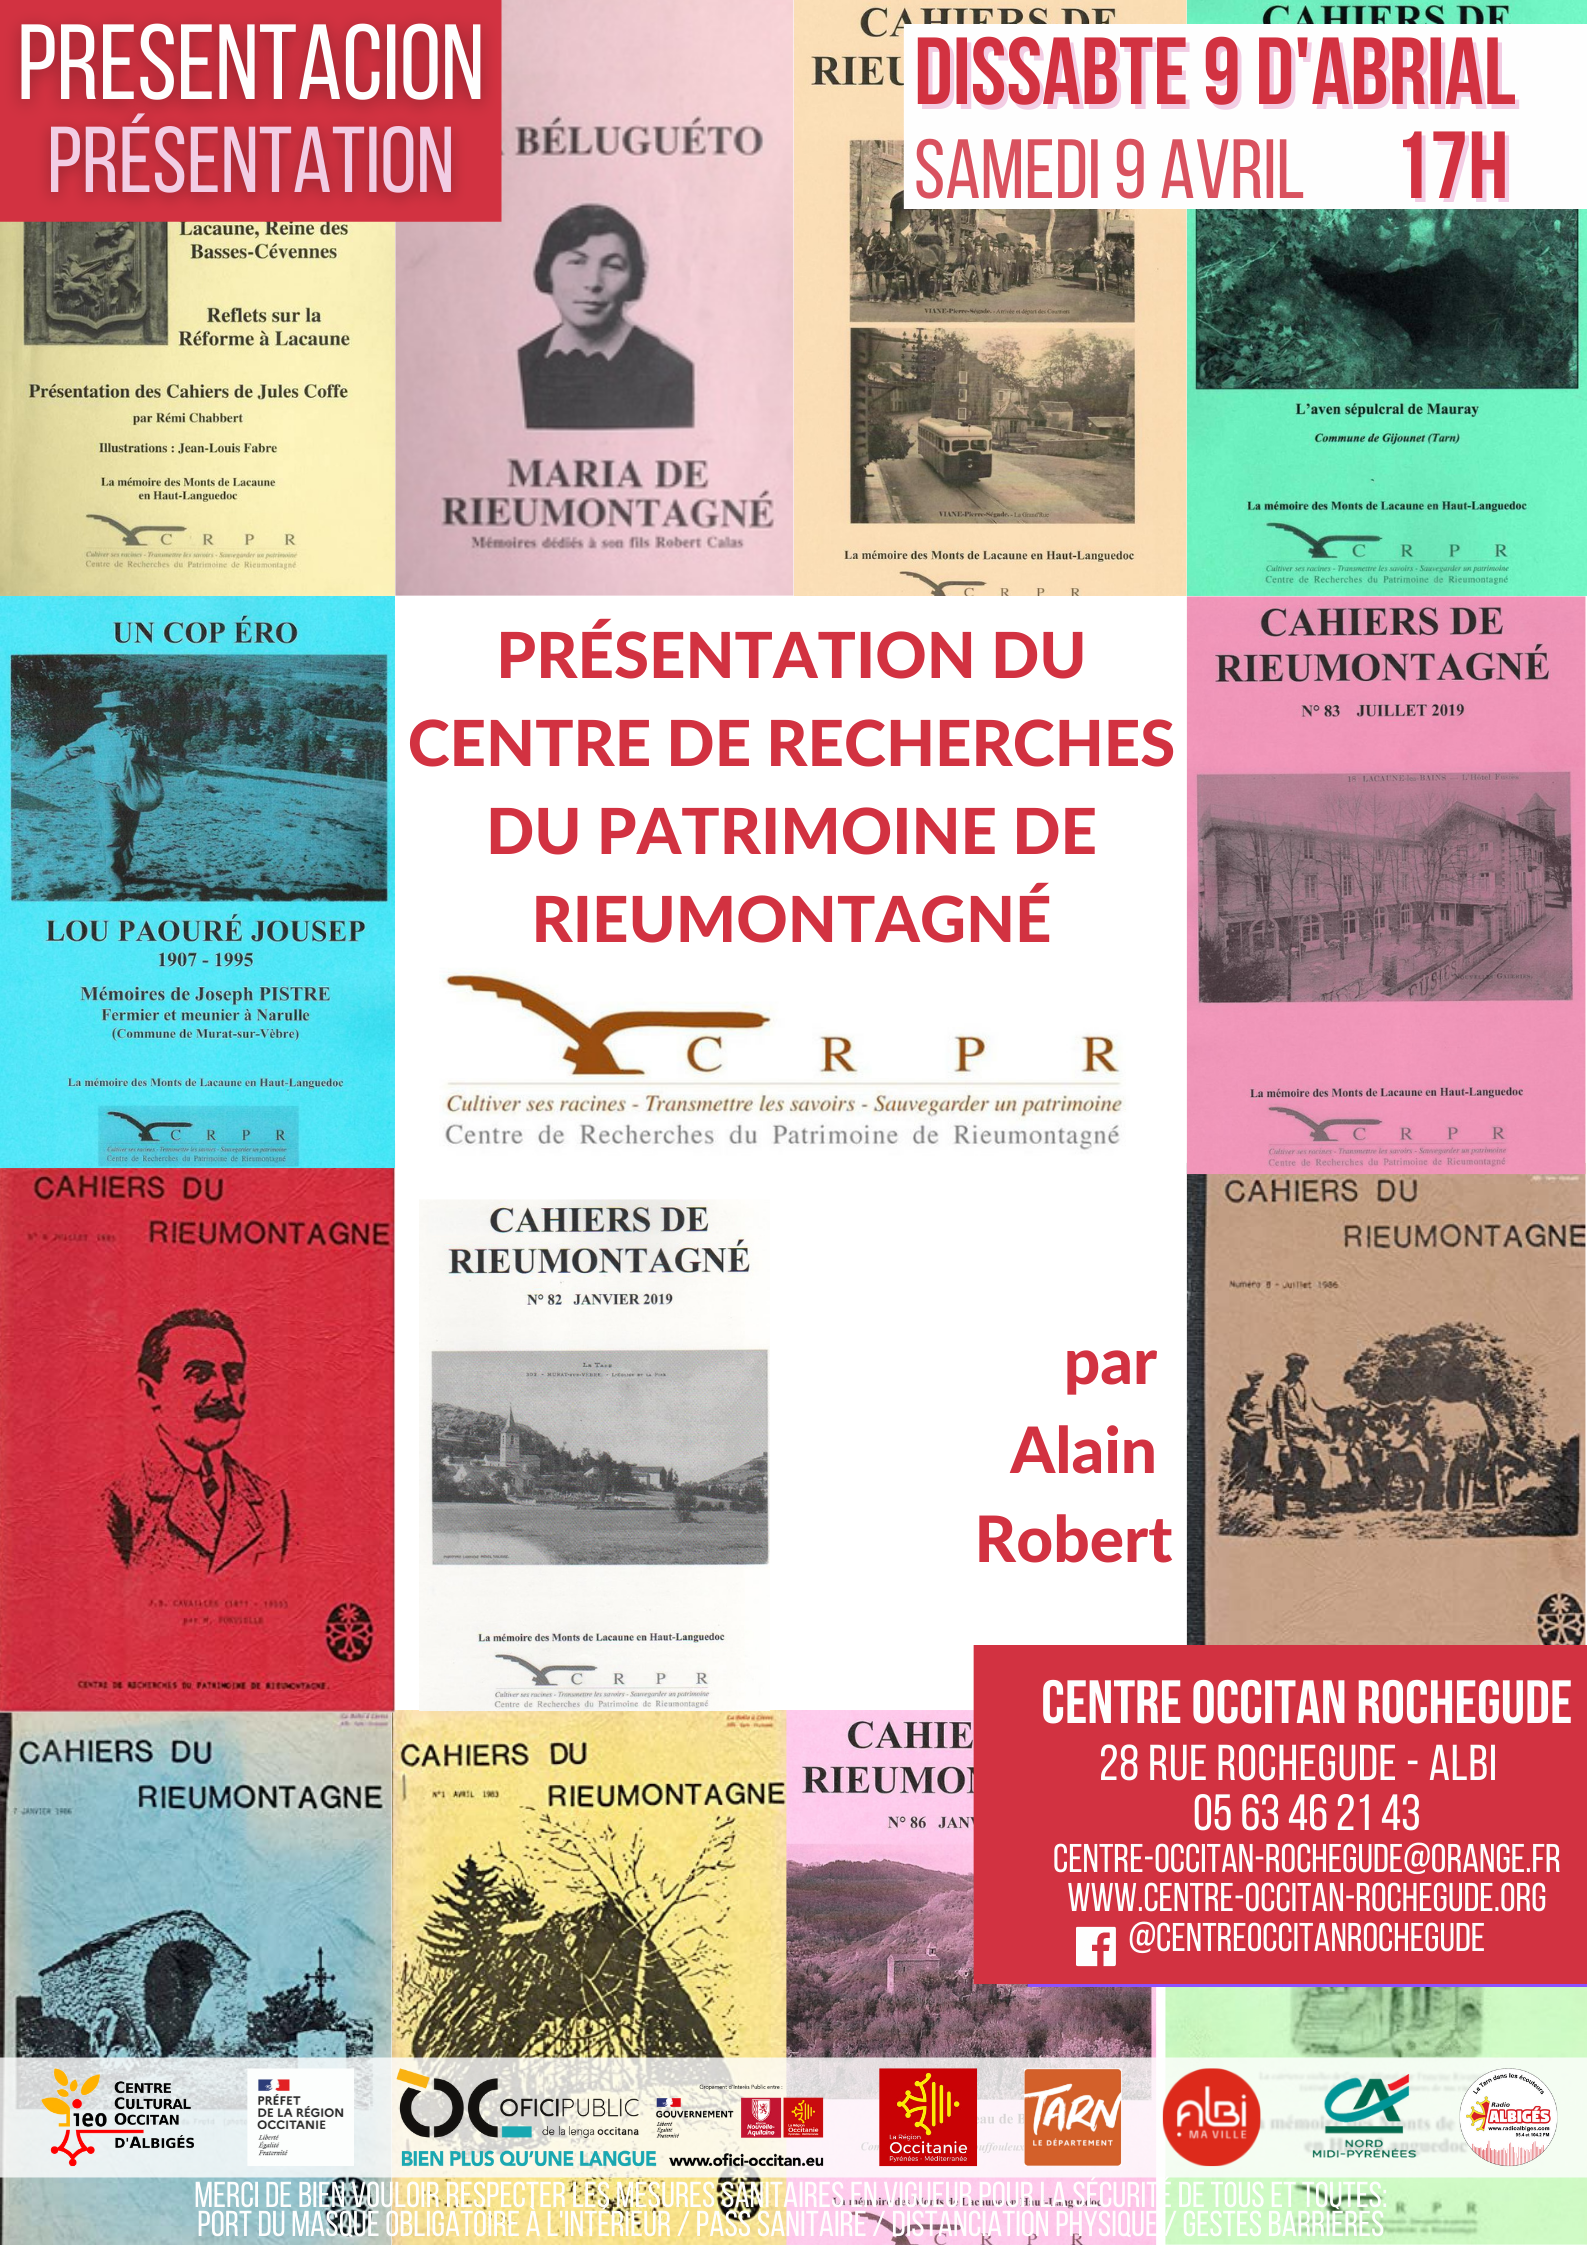 You are currently viewing Presentacion del Centre de Recherches du Patrimoine de Rieumontagné